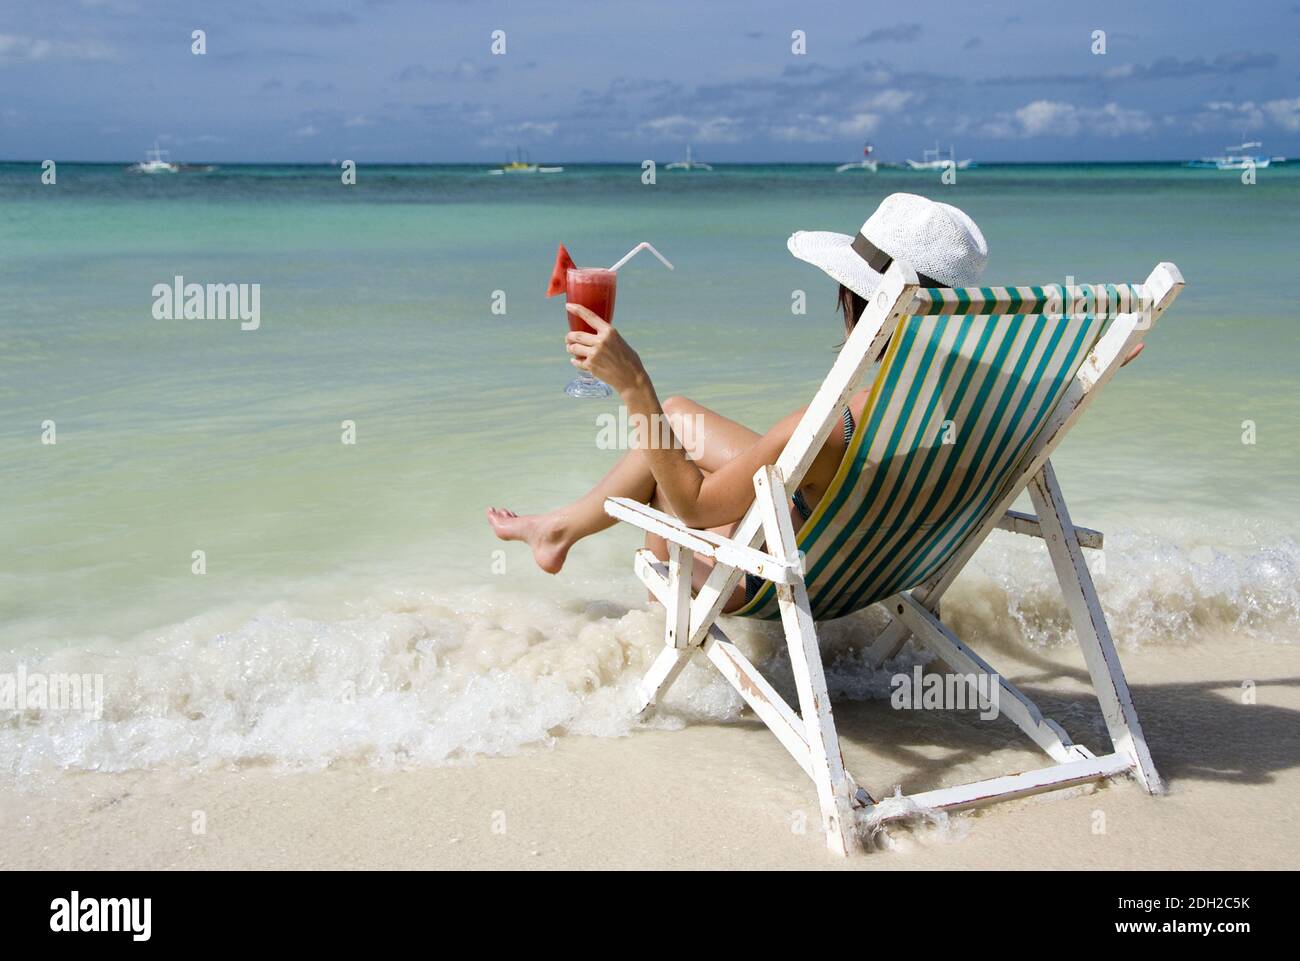 Frau auf Soinnenstuhl sitzt am Strand und einen geniesst Cocktail, Philippinen Insel, Boracay, M. : Oui Banque D'Images